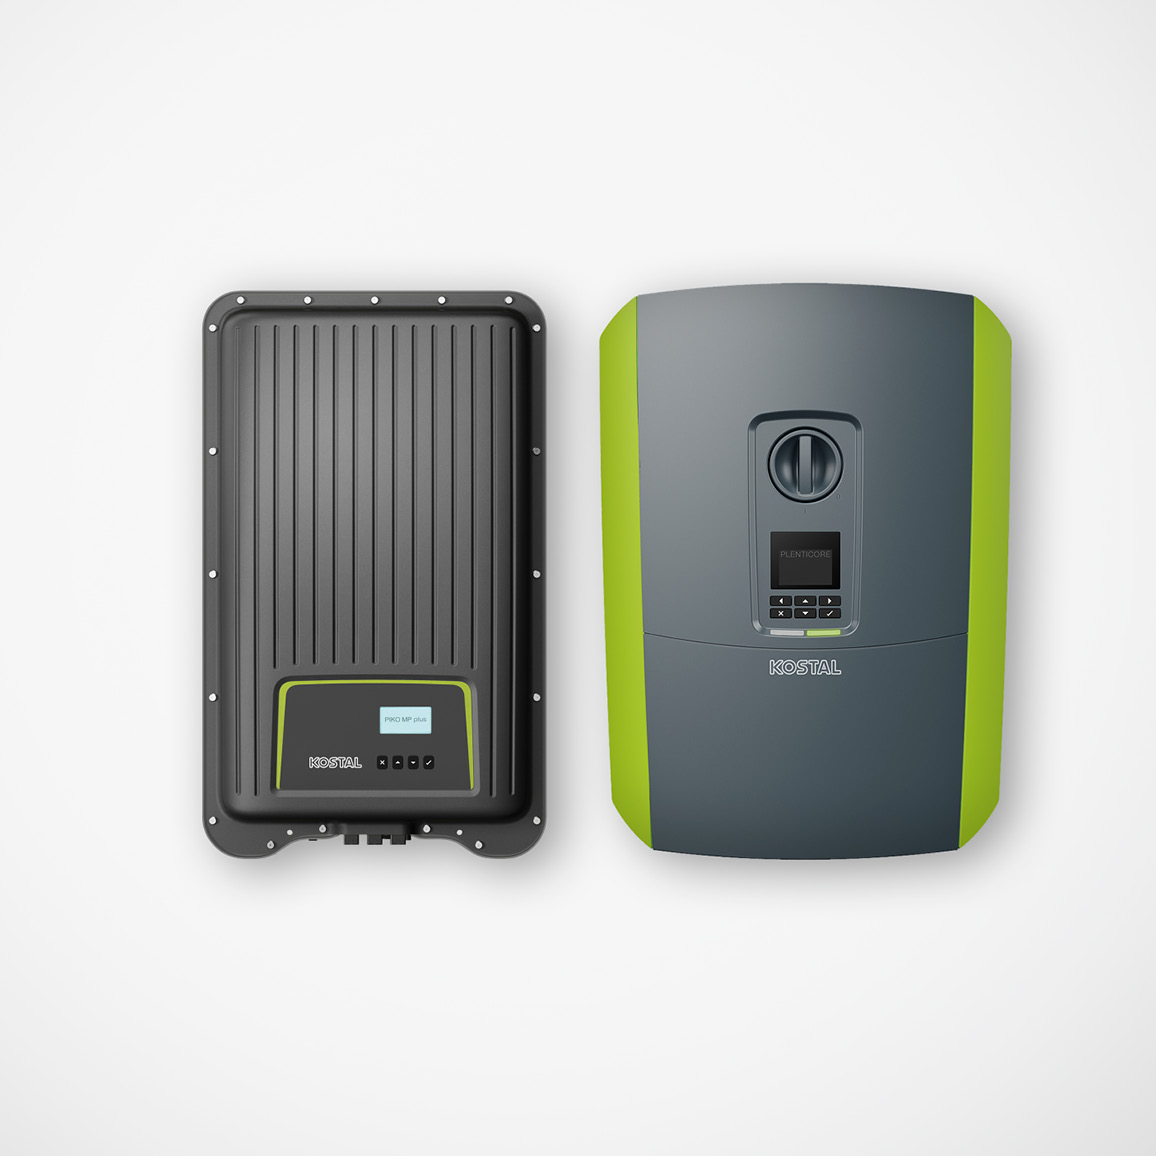 Mini Onduleur 88 000 mah pour garder vos appareils allumés lors des  coupures d'électricité. Idéal pour: modem, téléphone, tablette, etc. -  Cowema